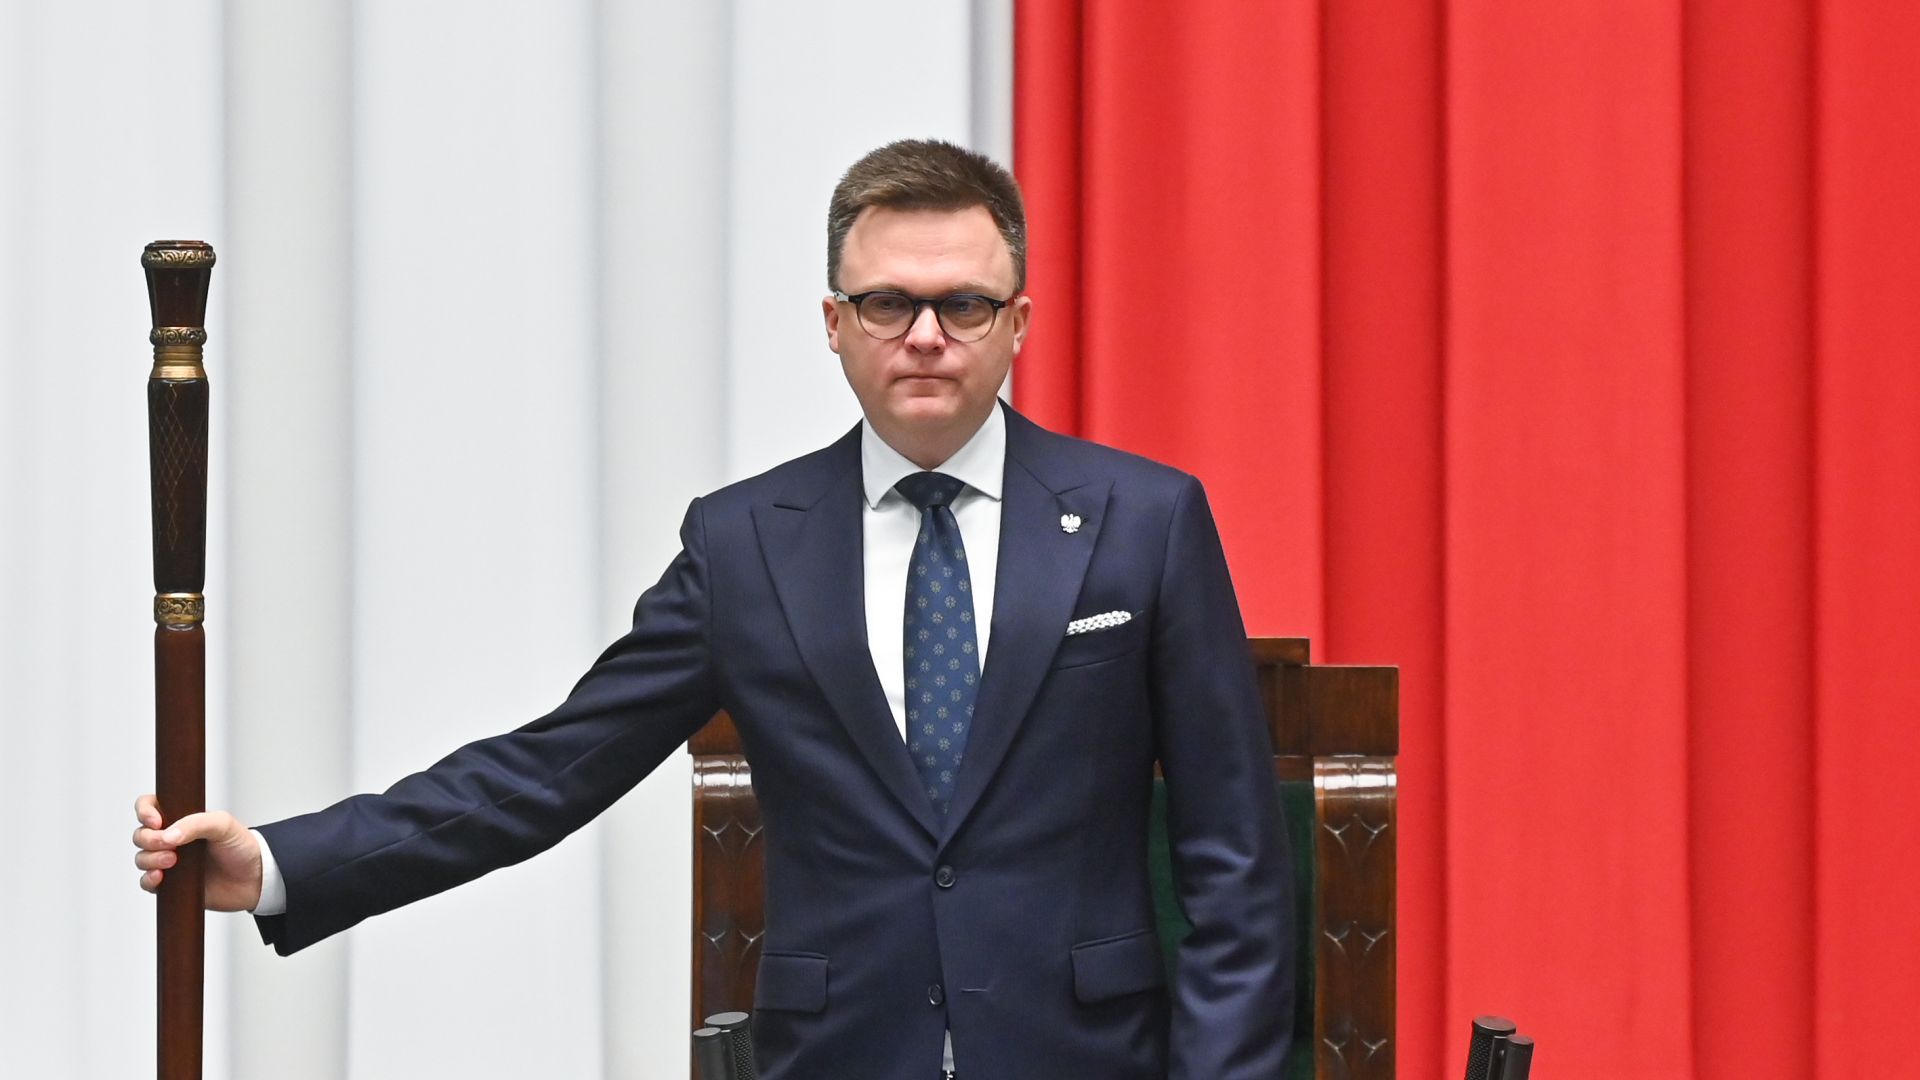 Marszałek Sejmu Szymon Hołownia powiedział, że sprawców nadużyć w Funduszu Sprawiedliwości należy szybko i skutecznie rozliczyć. Jak stwierdził, w debacie publicznej należy zająć się wizją rozwoju kraju.